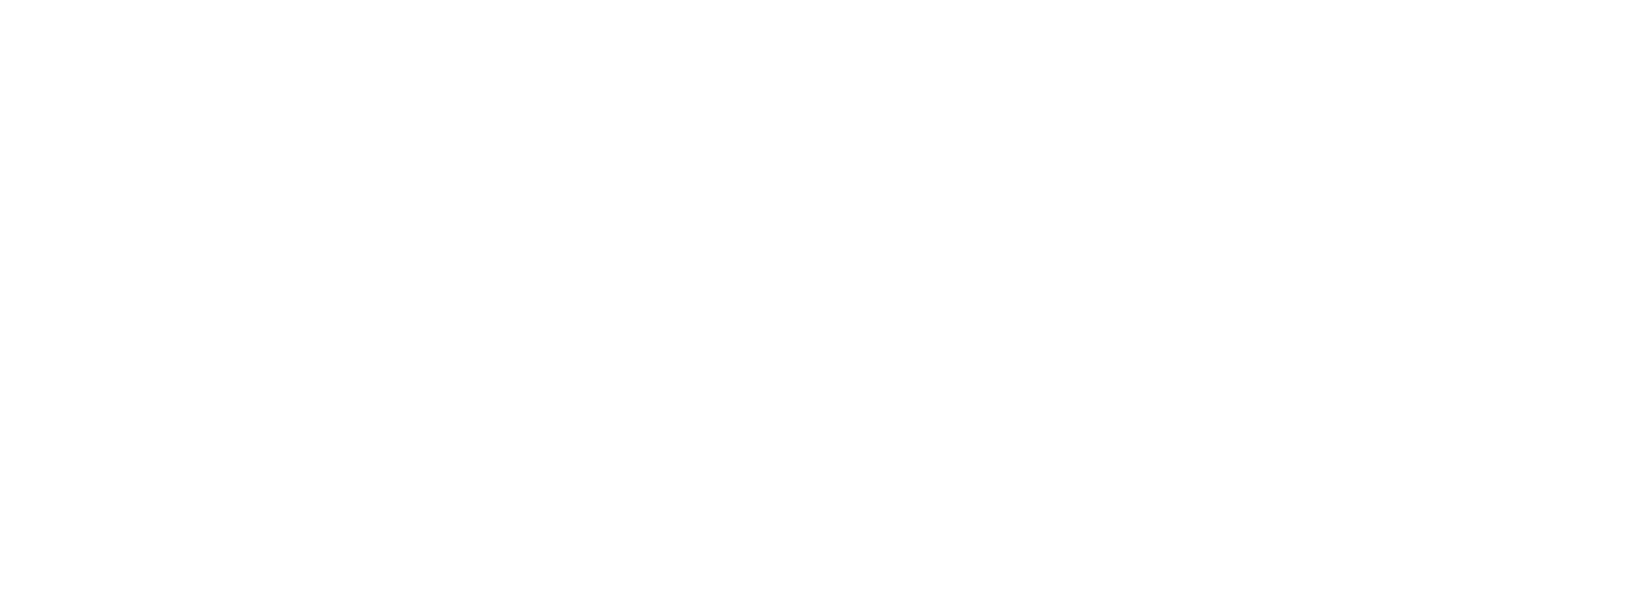 Pernod Ricard logo large for dark backgrounds (transparent PNG)